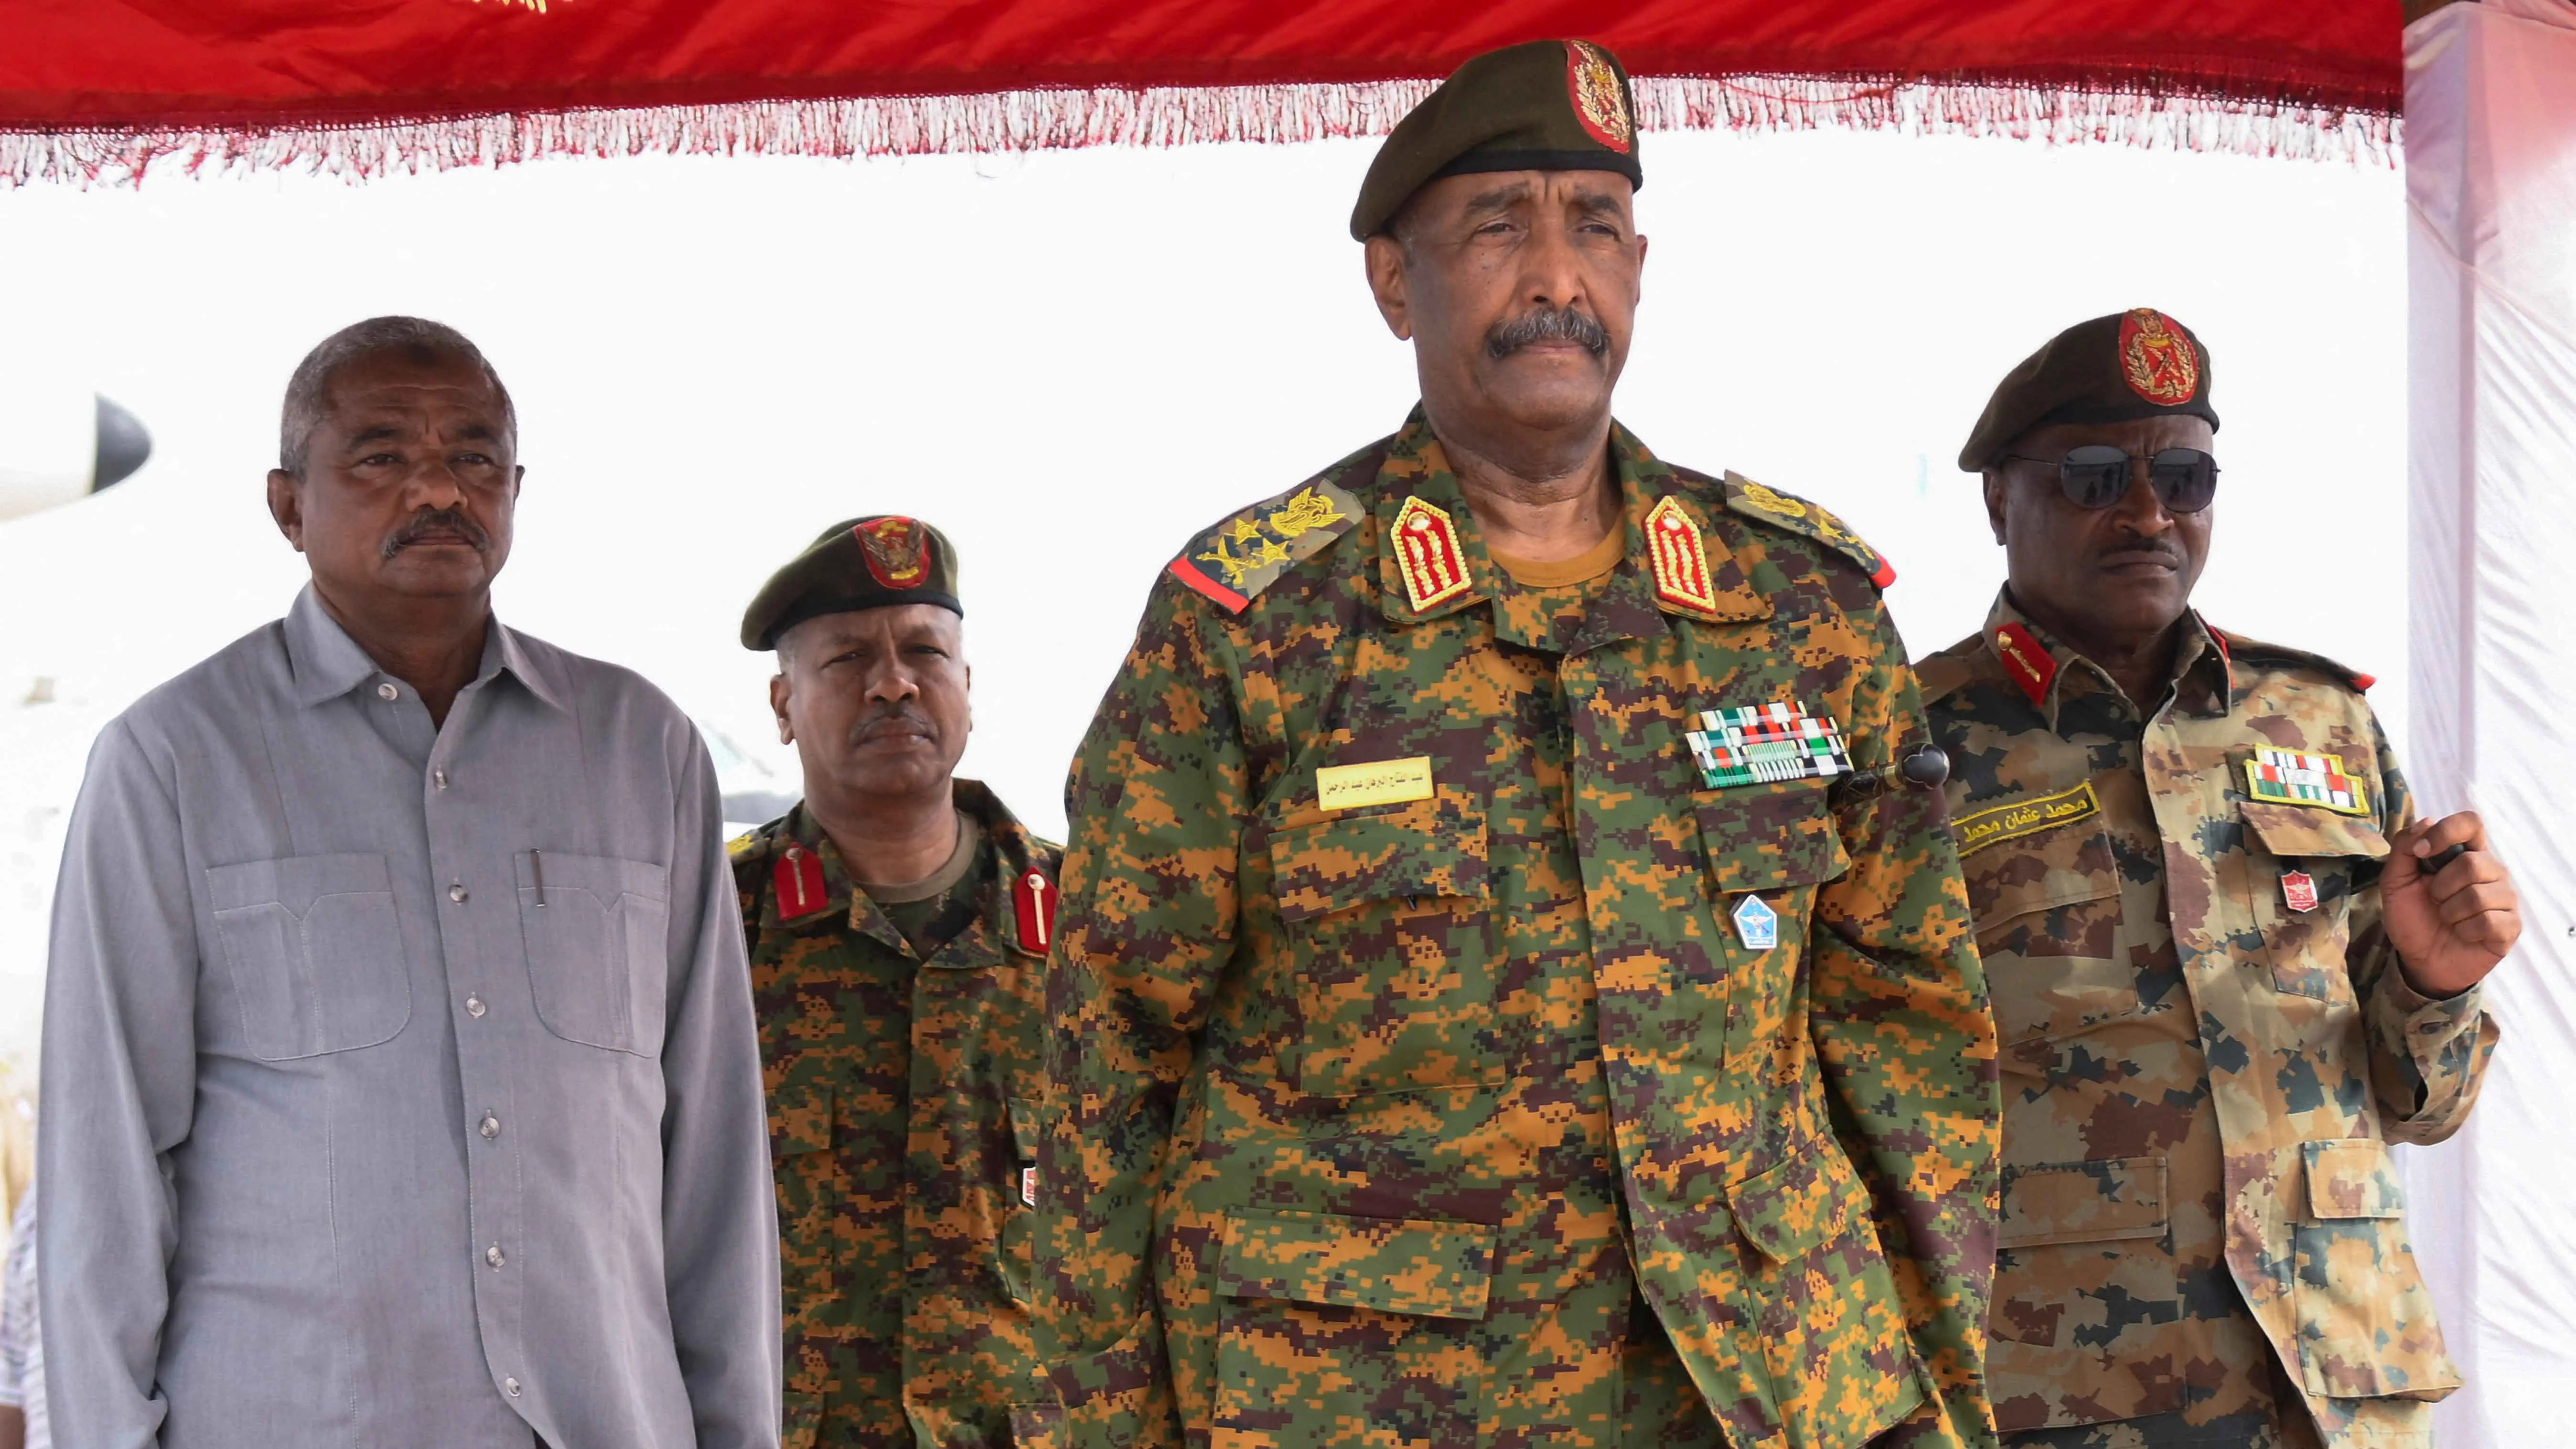 بعد إخفاقات متتالية ..هل فقد أنصار "البرهان" ثقتهم بالجيش السوداني؟